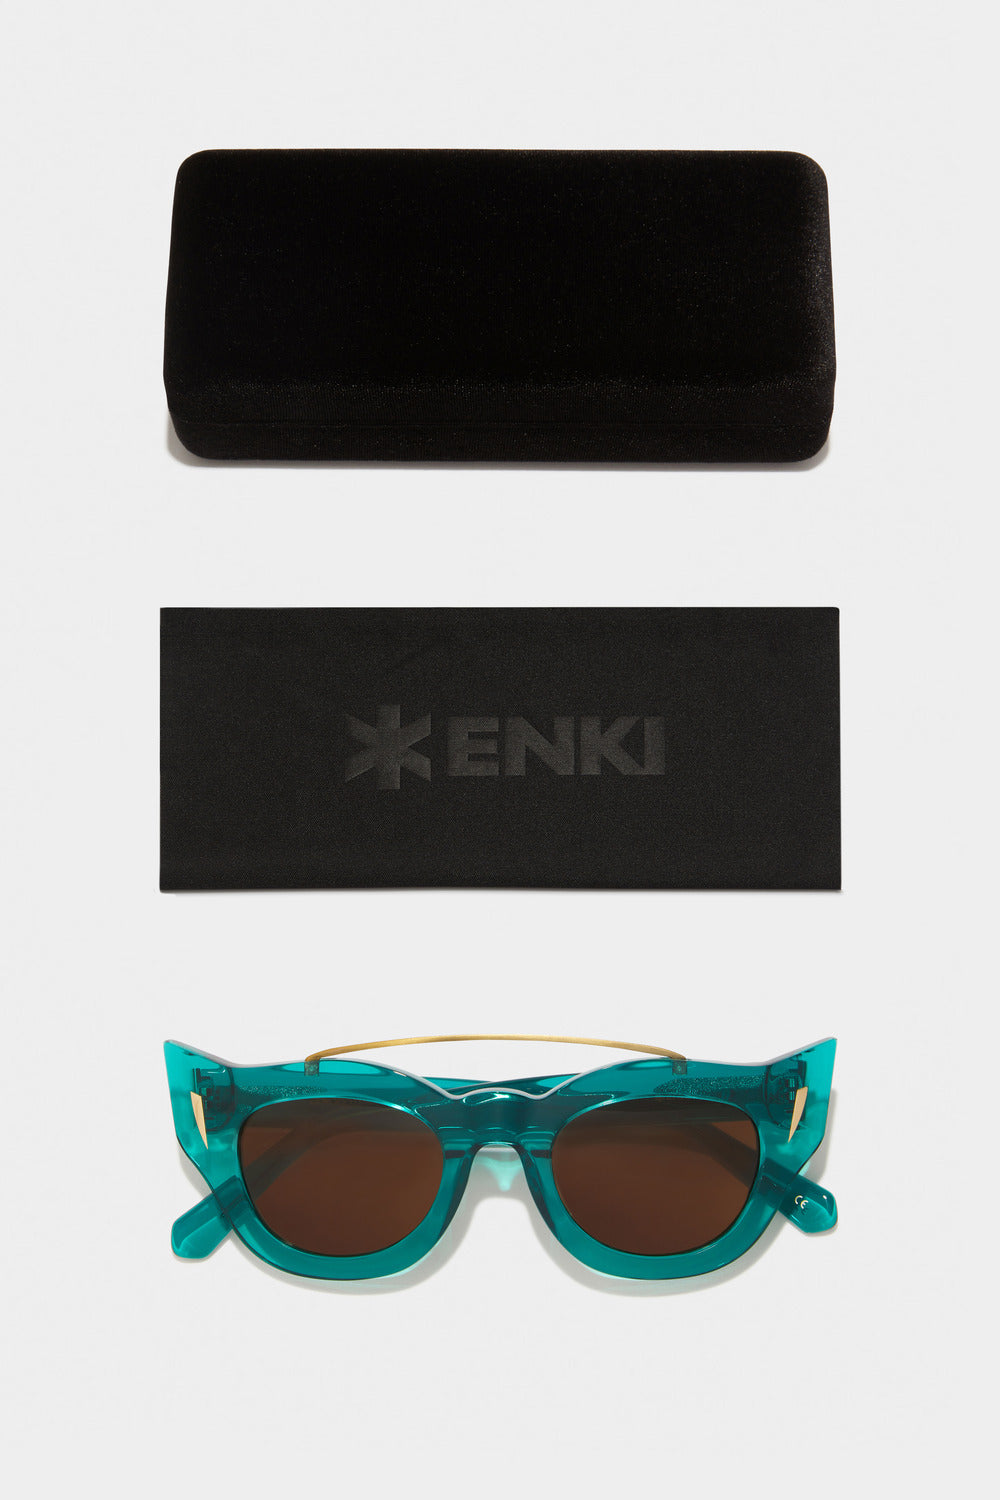 www.enkieyewear.com Zenotus Men’s and Women’s Sunglasseswww.enkieyewear.com Zenotus Women’s Sunglasses